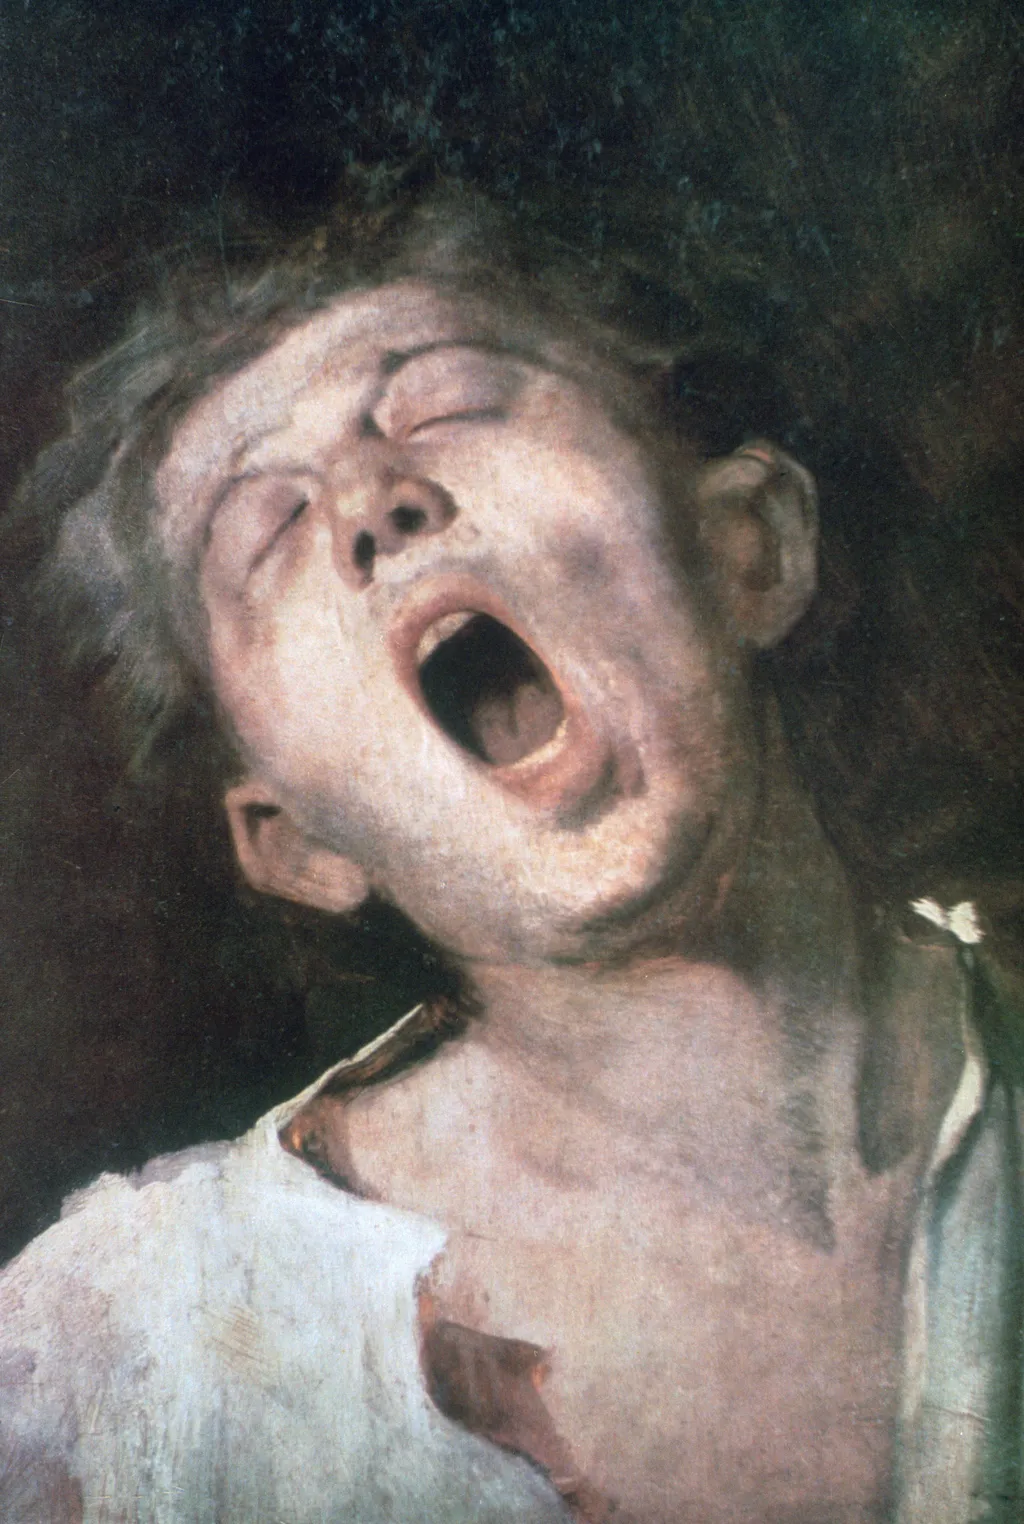 A Top 10 nem élő magyar művész rangsora a 2021 első felére vonatkozó aukciós eredményeik alapján,Munkácsy, 'Yawning Apprentice' Mihály Munkácsy 19th century 1860s Close up Young Yawning Sleepy Waking up Wake up Open mouth 